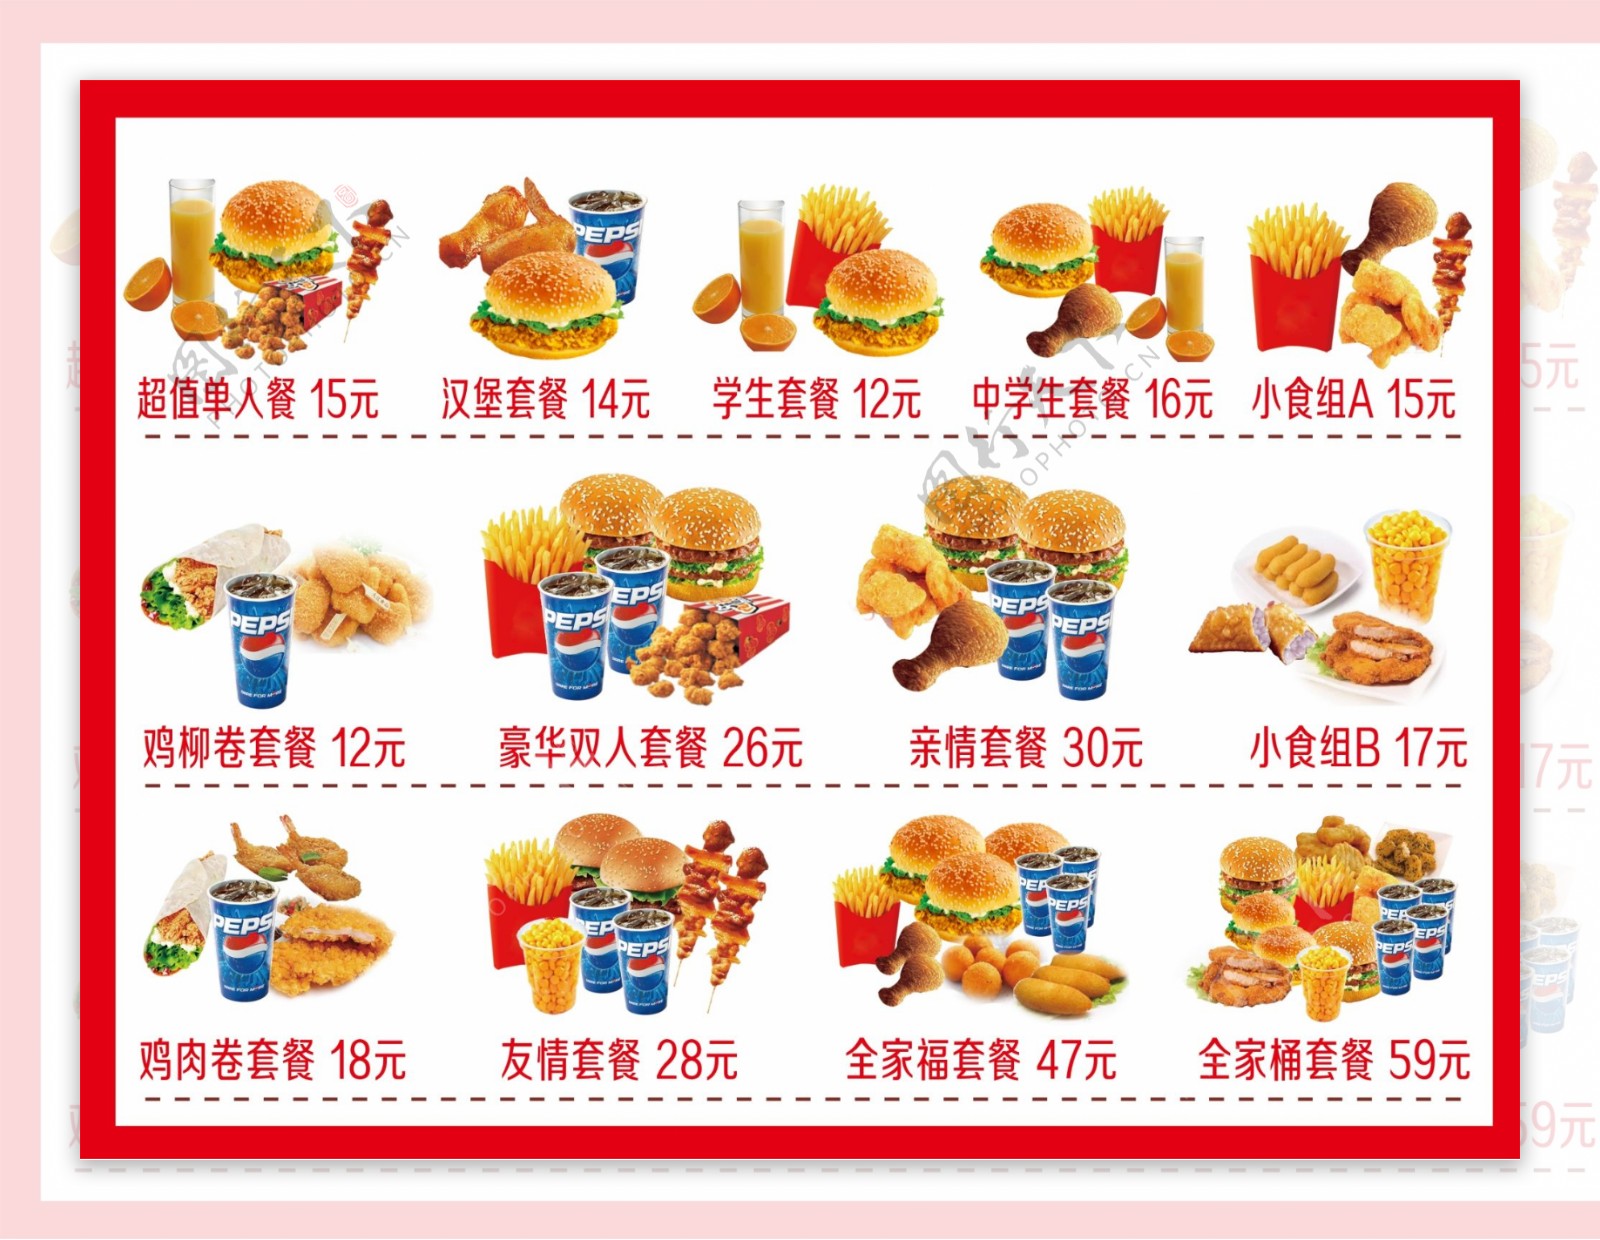 【食悟】台灣 - Mos burger 摩斯漢堡 - Nioah News 泥芋仔新聞